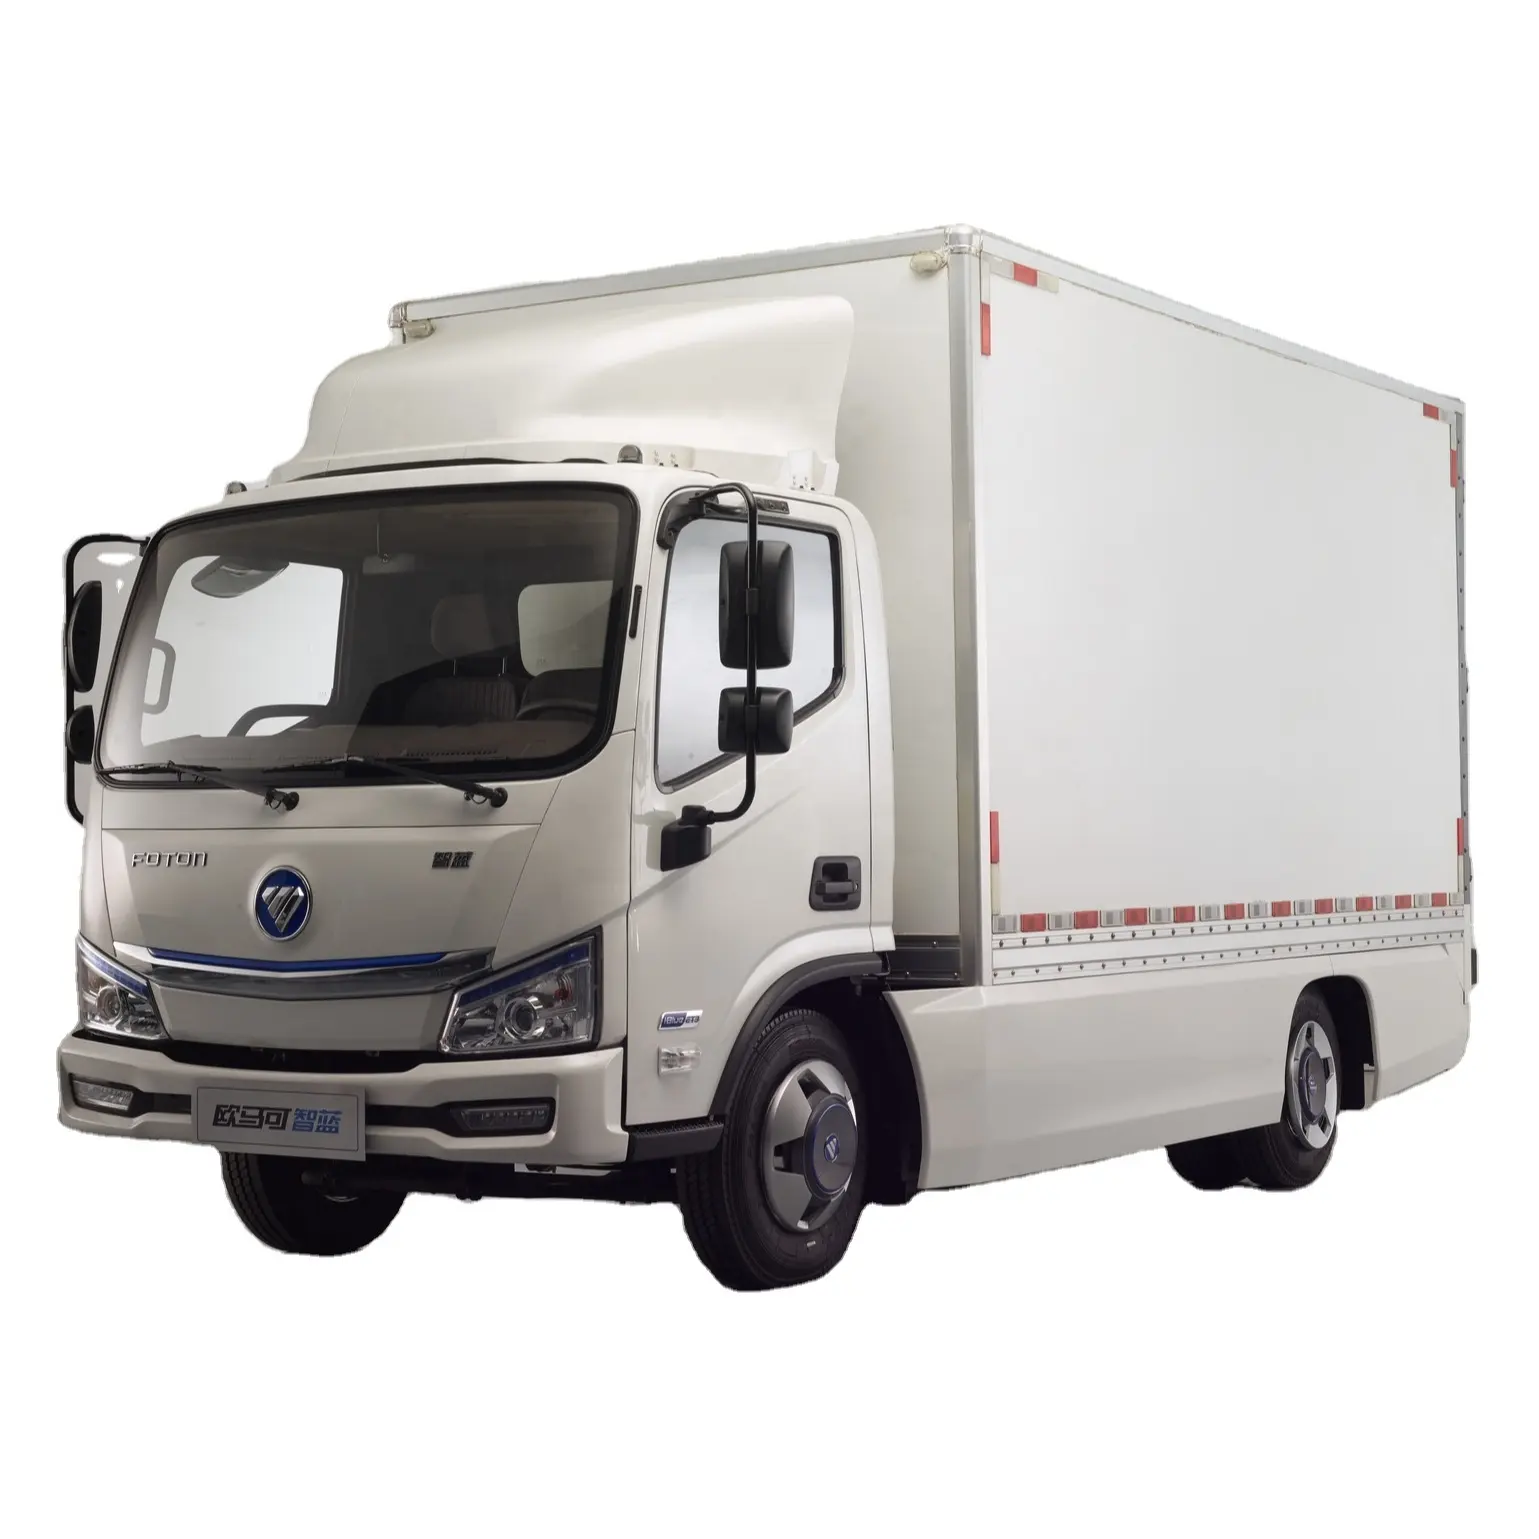 2023 супер производство 3360 мм новые энергетические грузовики легкий Фургон Грузовик удобный грузовой автомобиль